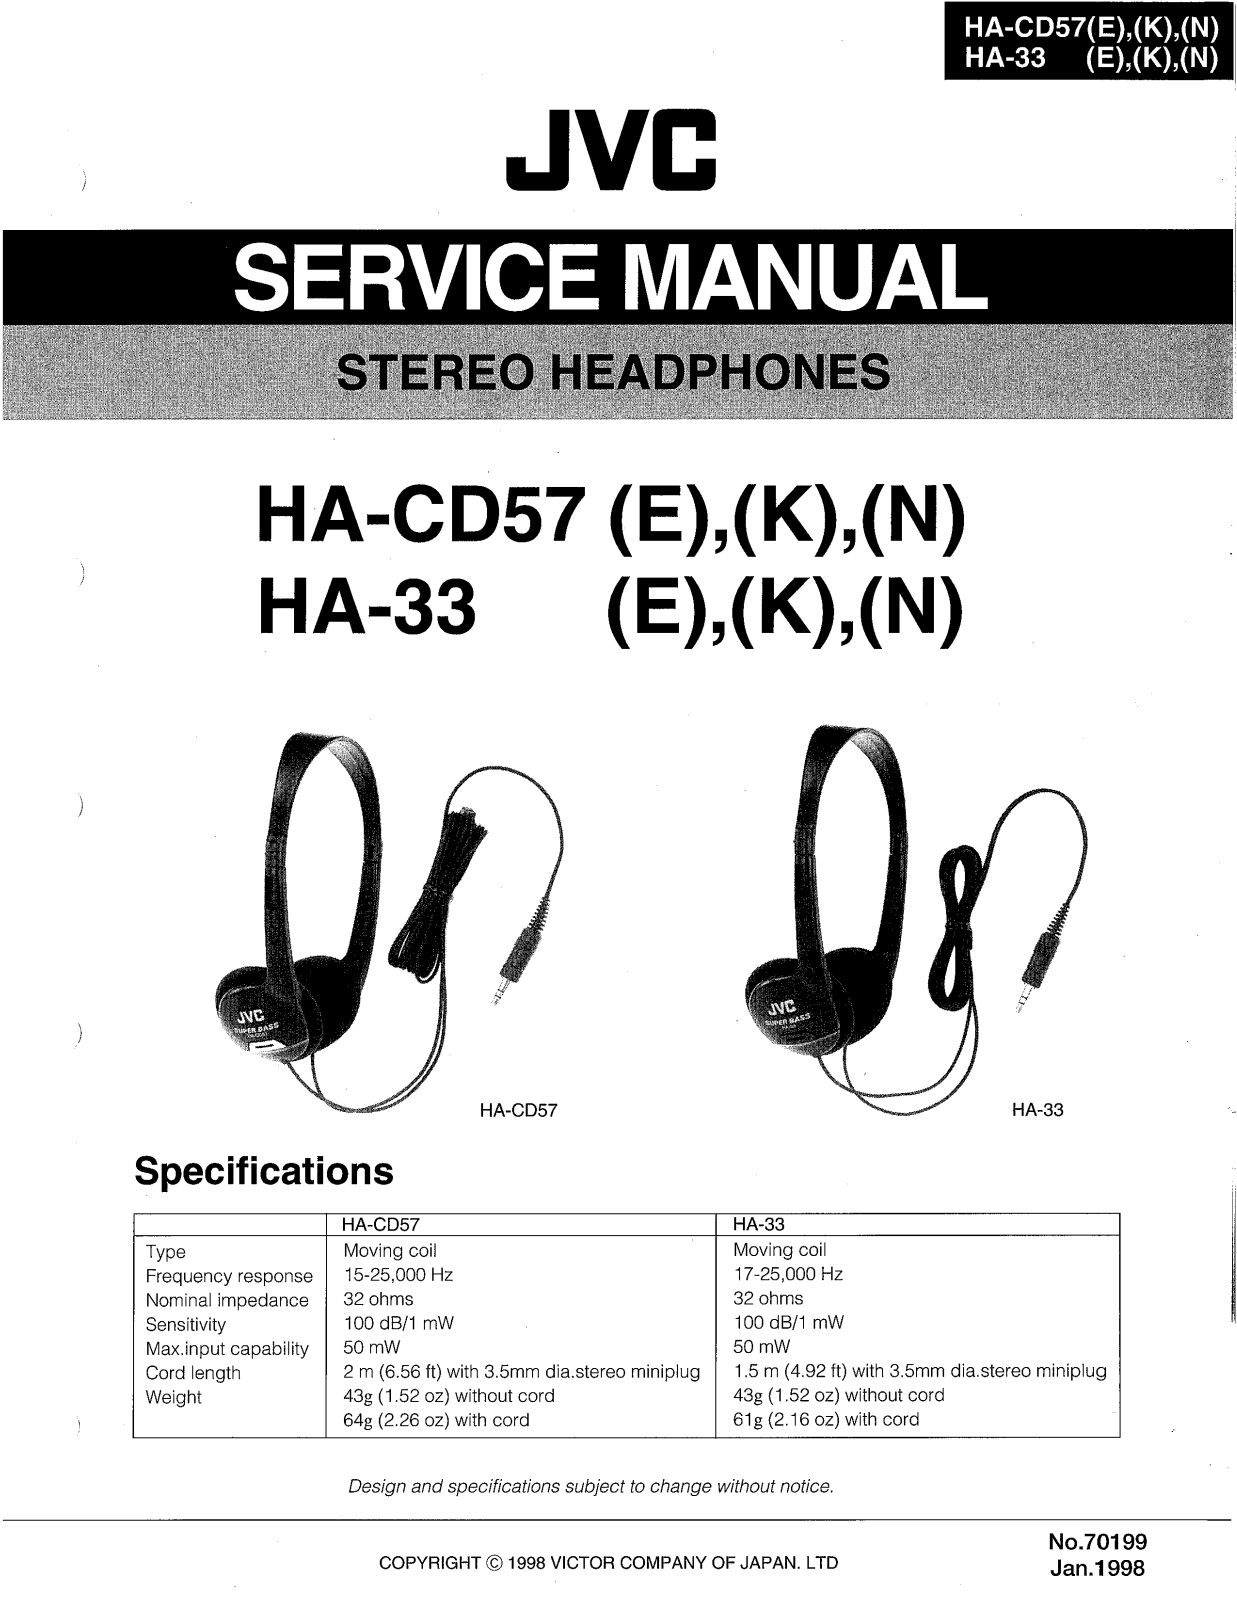 JVC HA-33(E), HA-33(K), HA-CD57(E), HA-CD57(K), HA-CD57(N) Service Manual